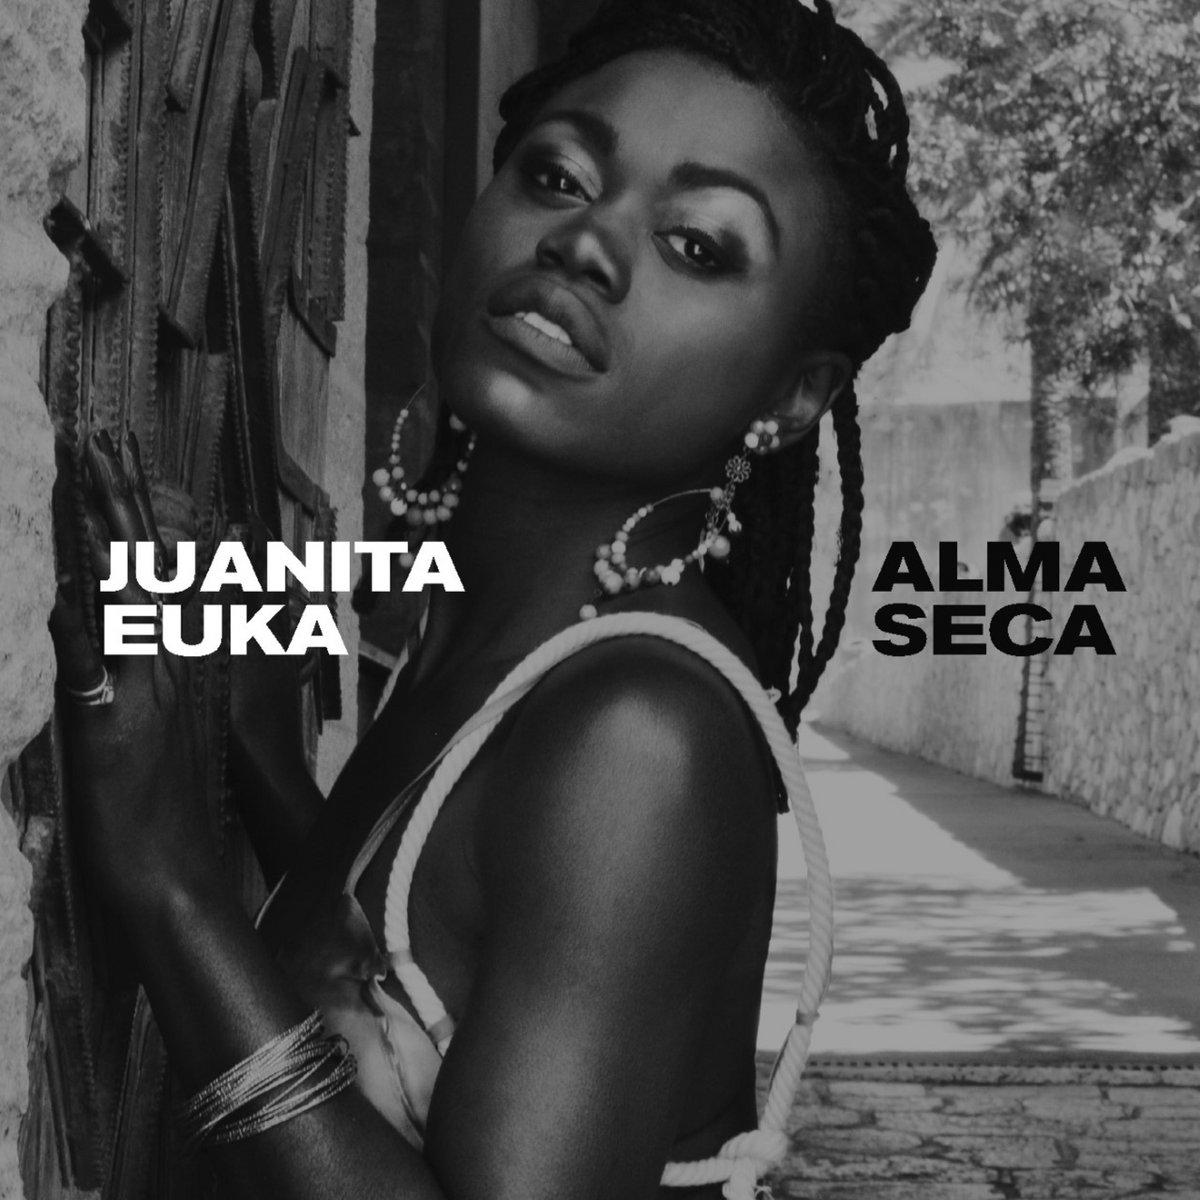 Juanita Euka music 2020